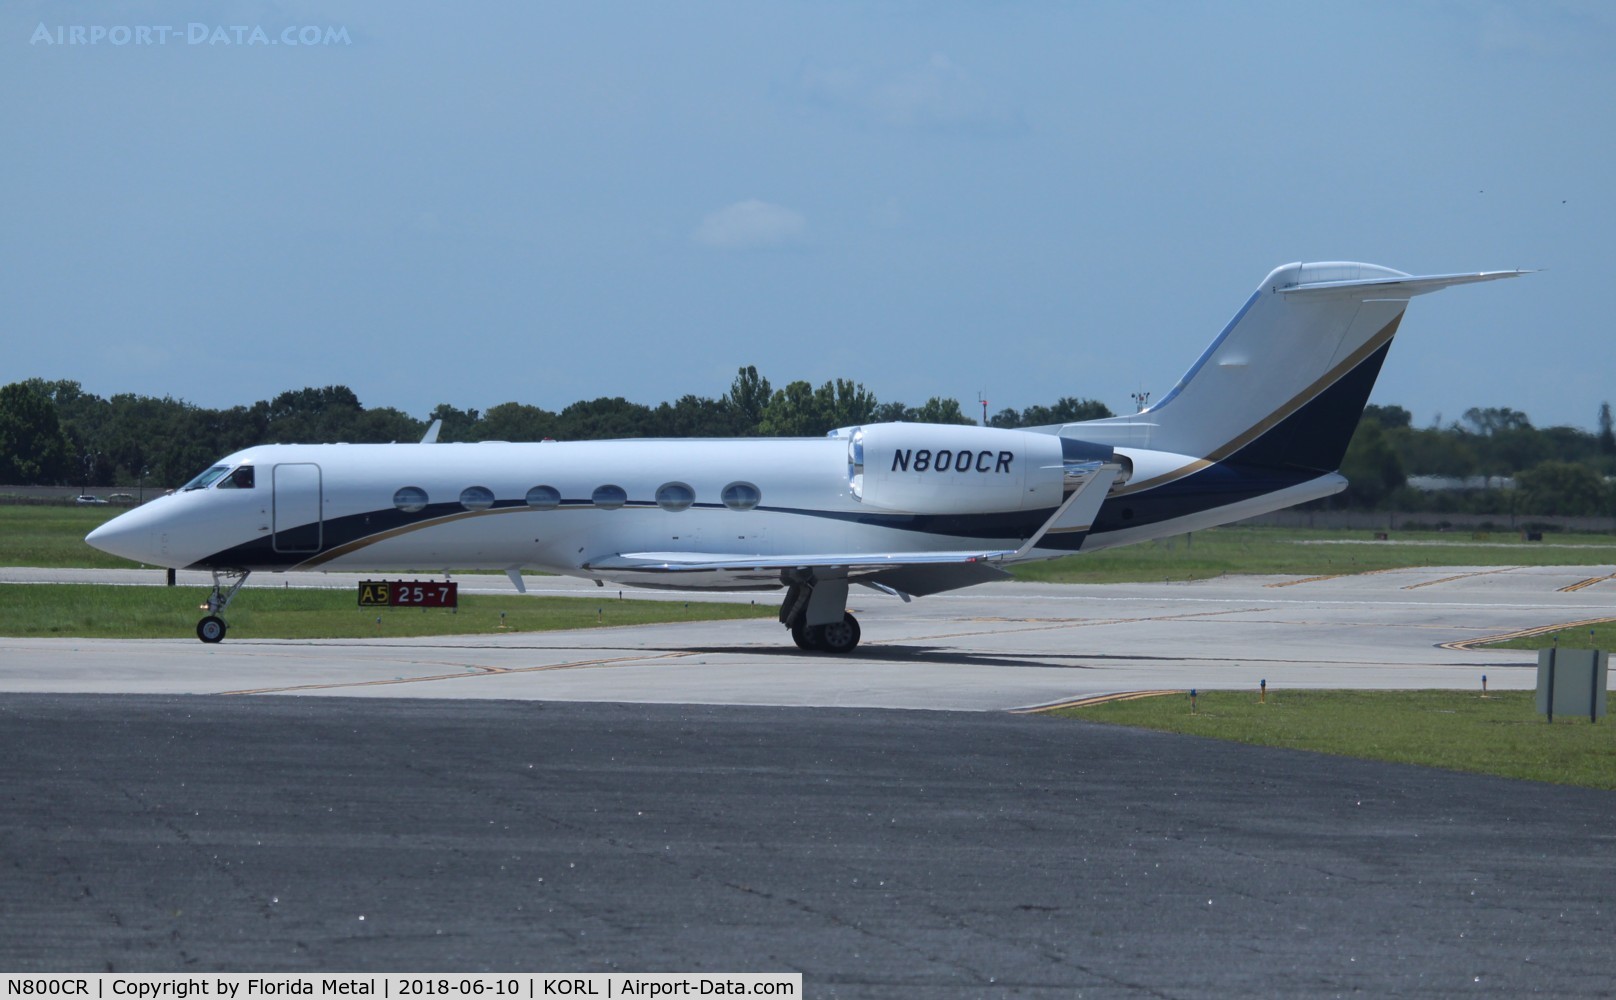 N800CR, 1998 Gulfstream Aerospace G-IV C/N 1334, Gulfstream IV